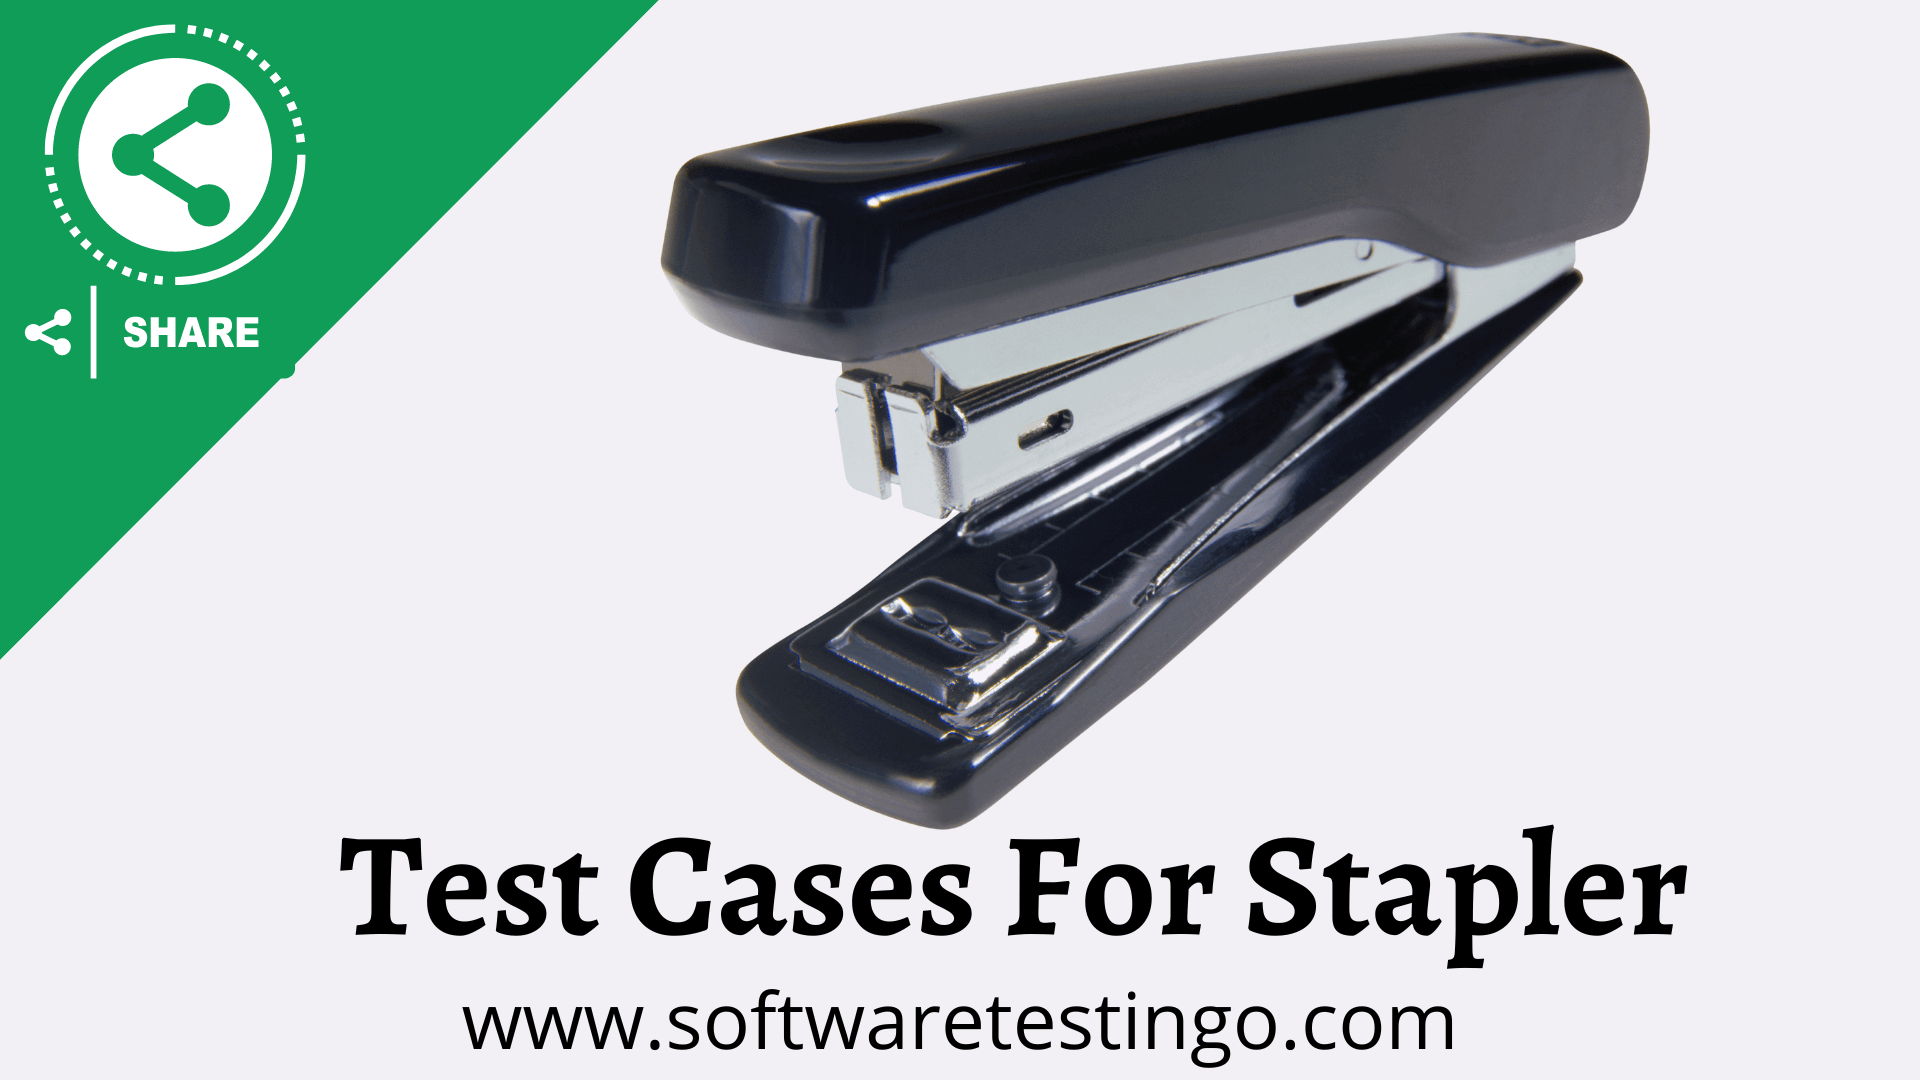 Test Cases For Stapler